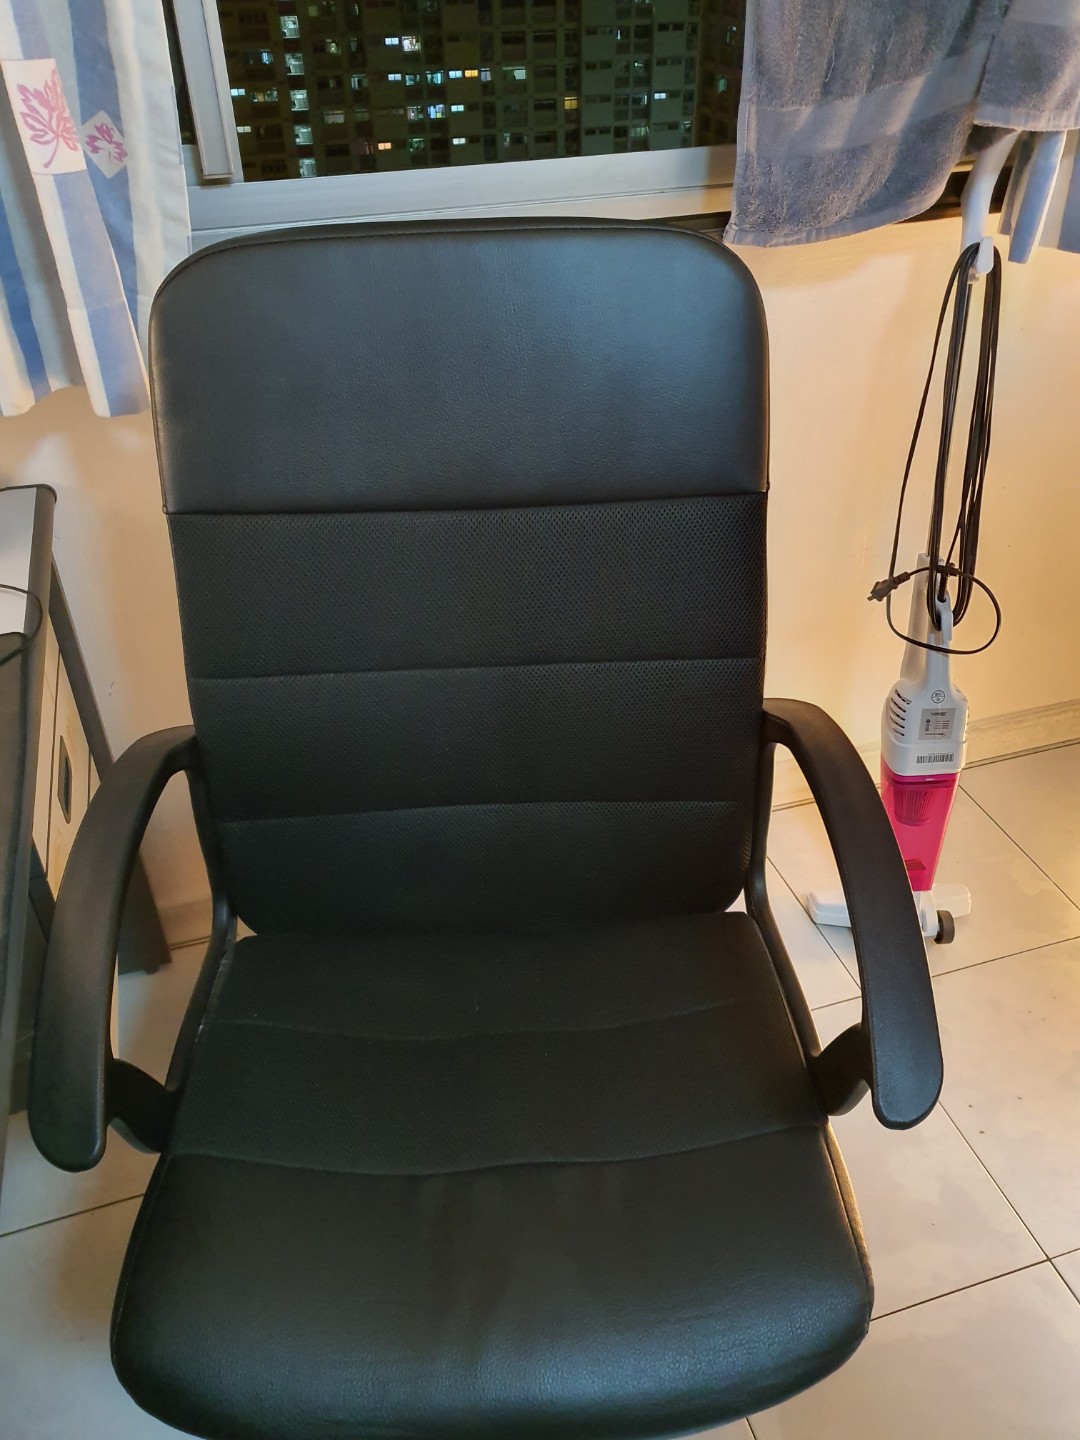 Ikea Office Chair 1576673697 071da14a 